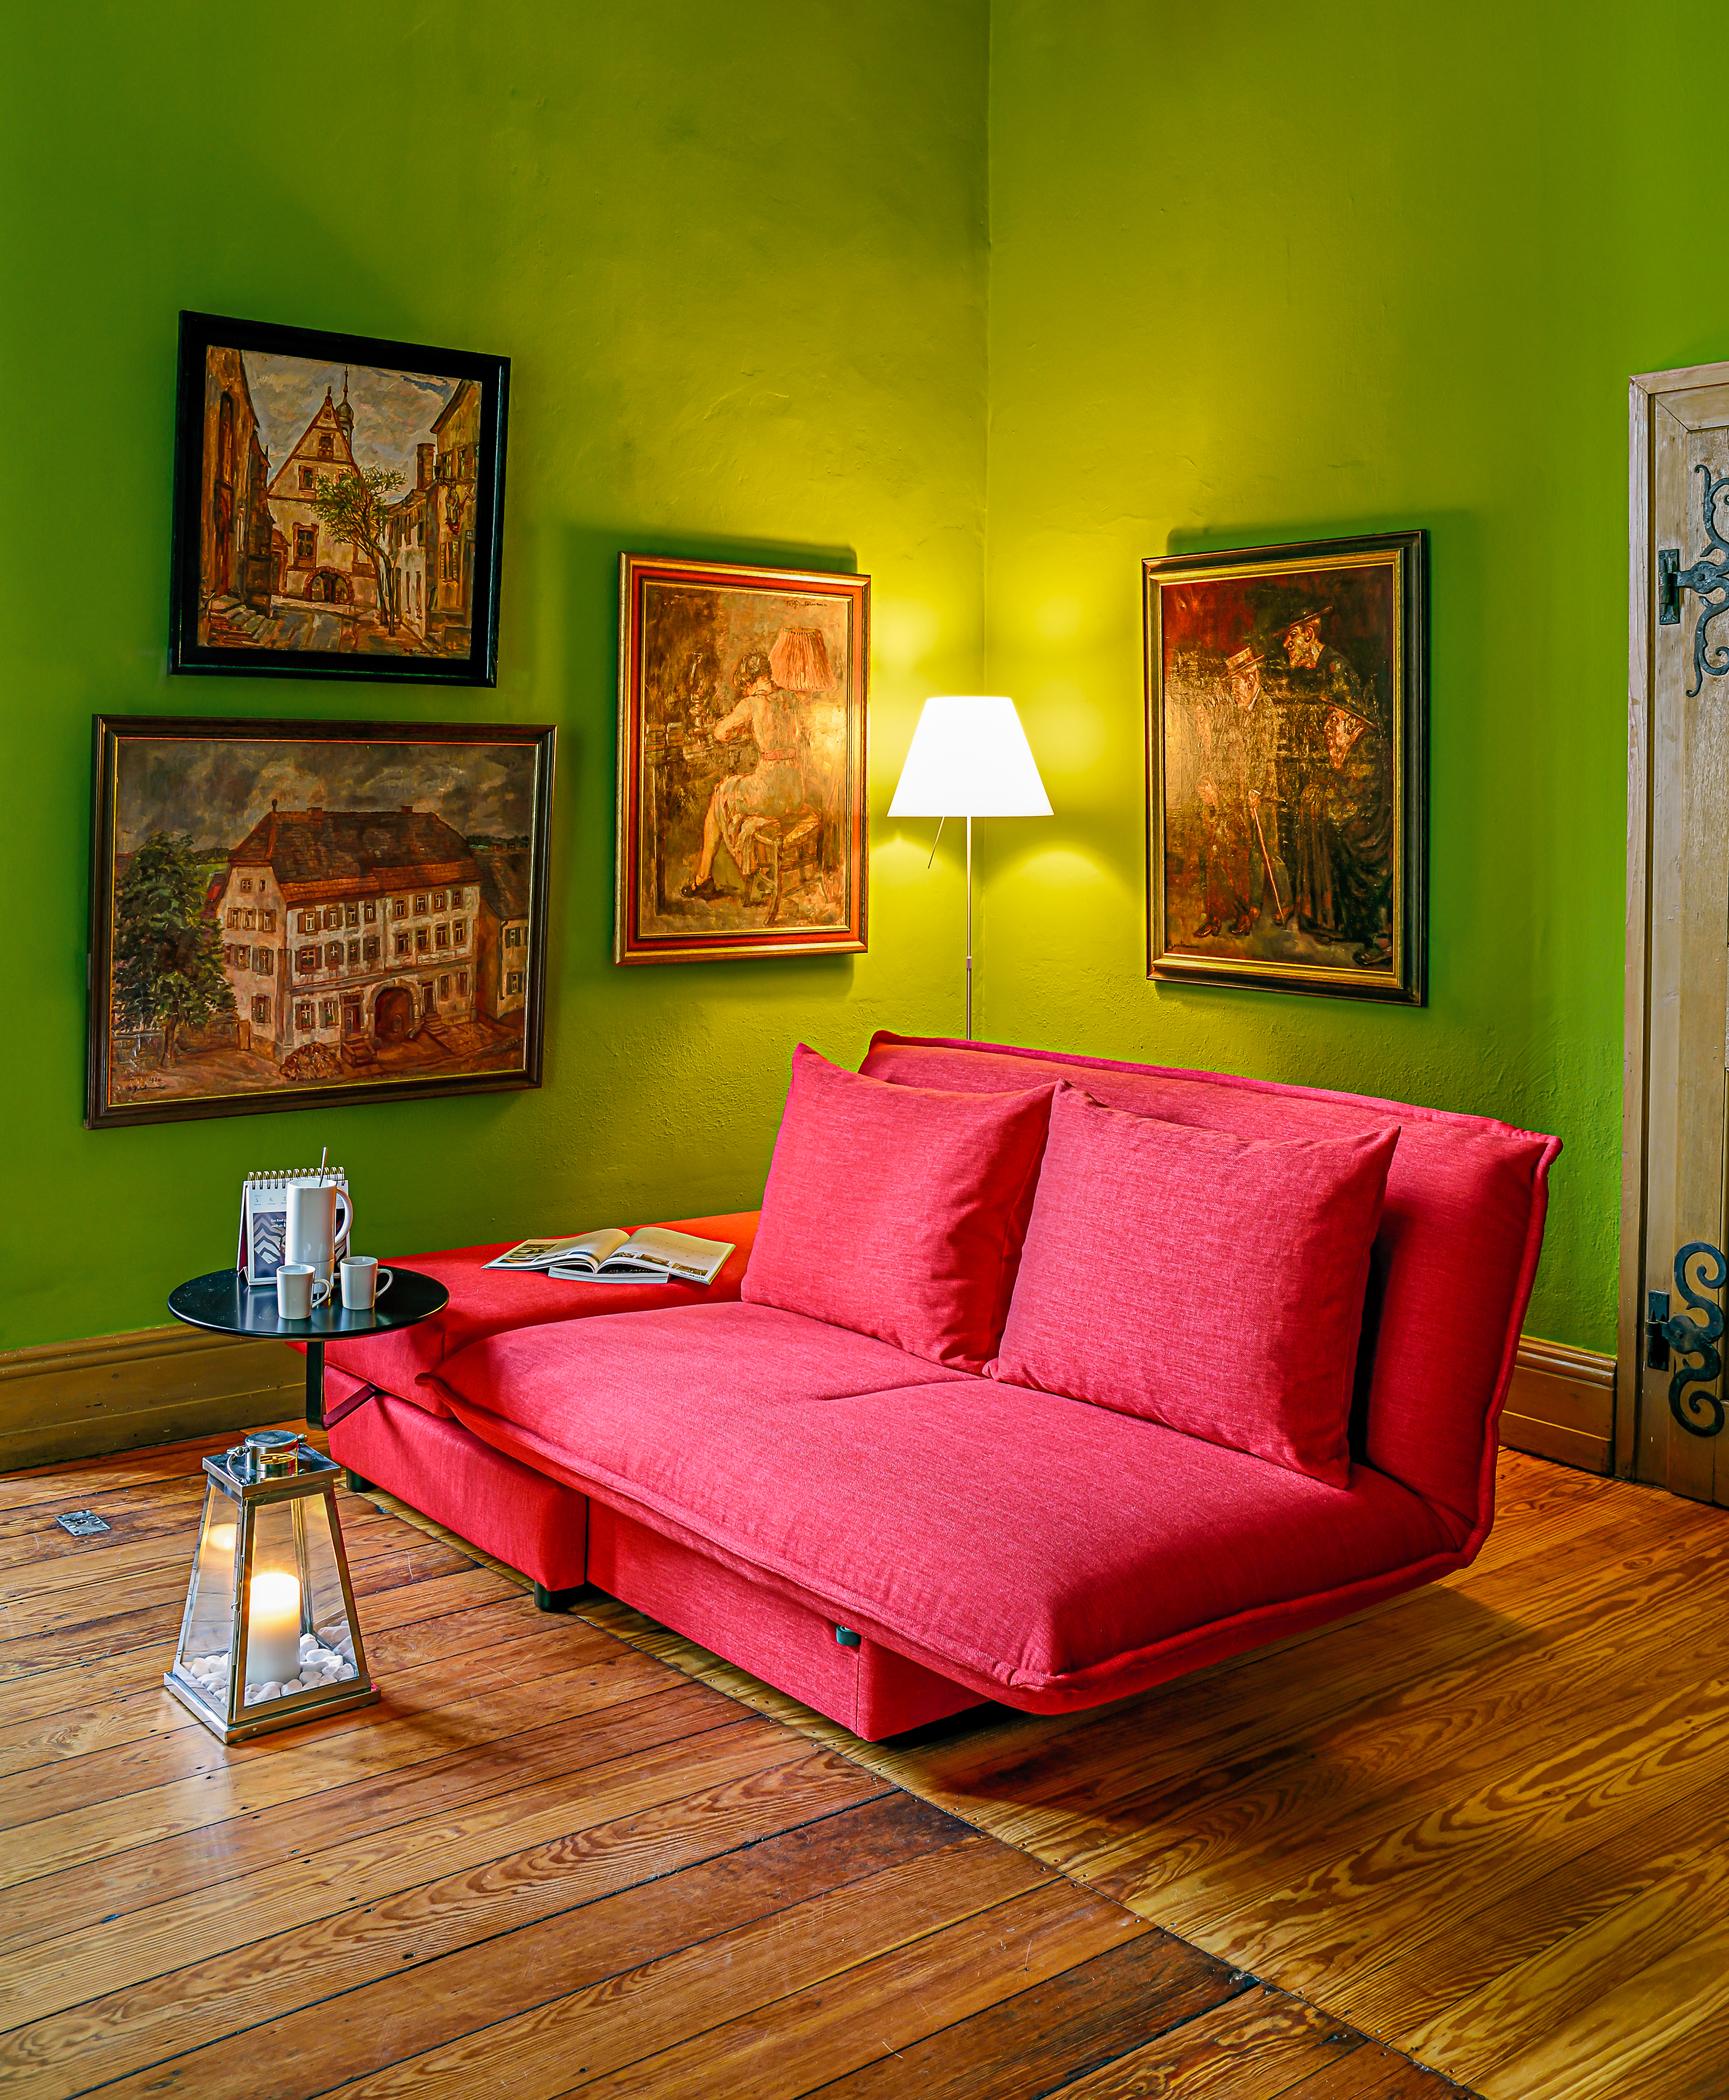 Schlafsofa in Rot #beistelltisch #wohnzimmer #stehlampe #sofa #lampe #rotessofa #grünewandfarbe ©Franz Fertig